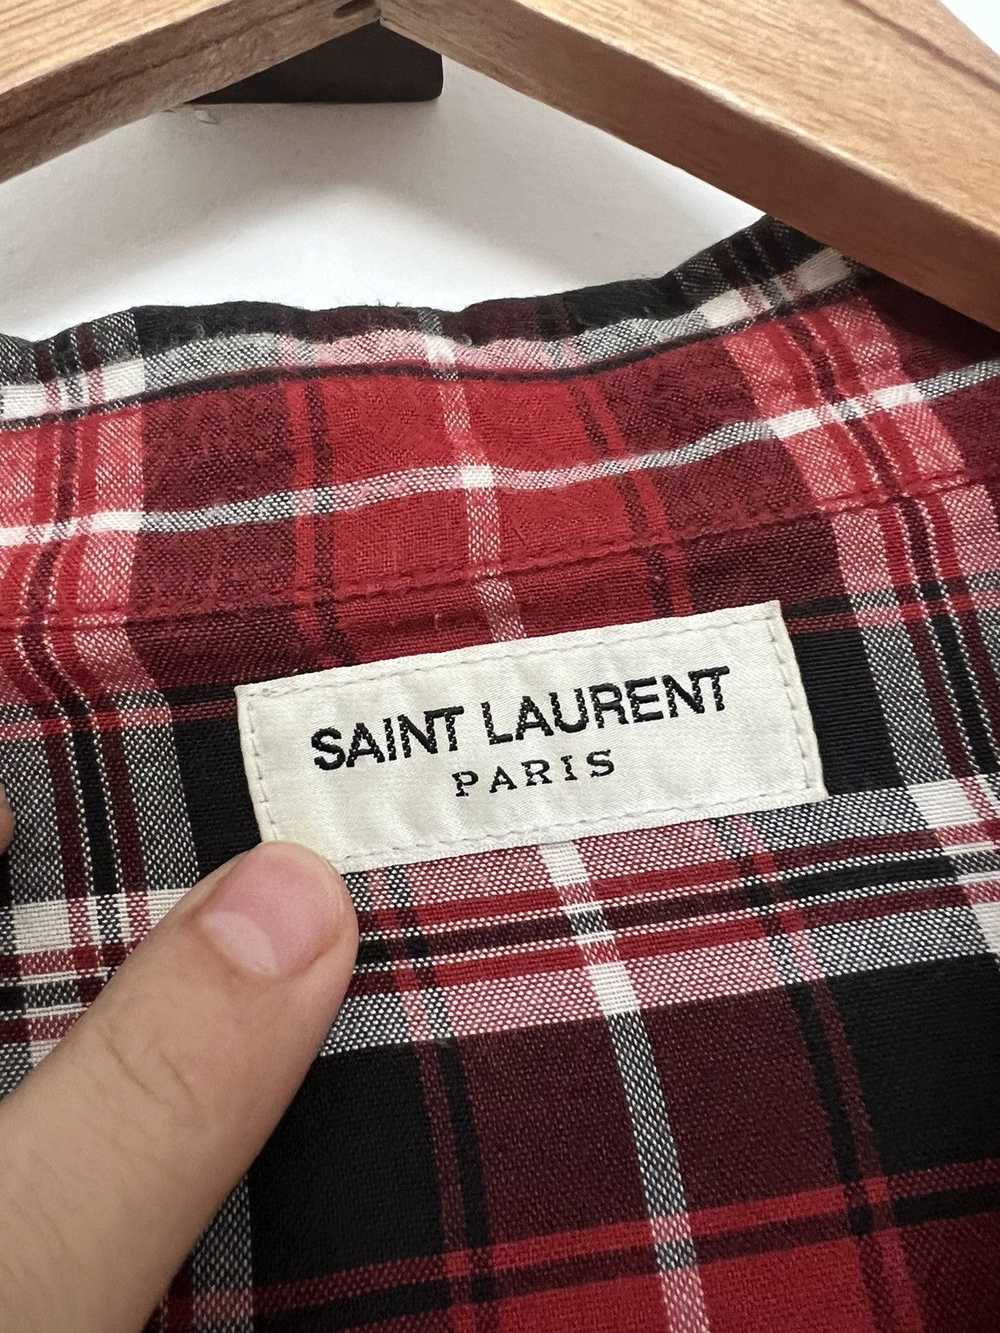 Saint Laurent Paris Red flannel - image 2